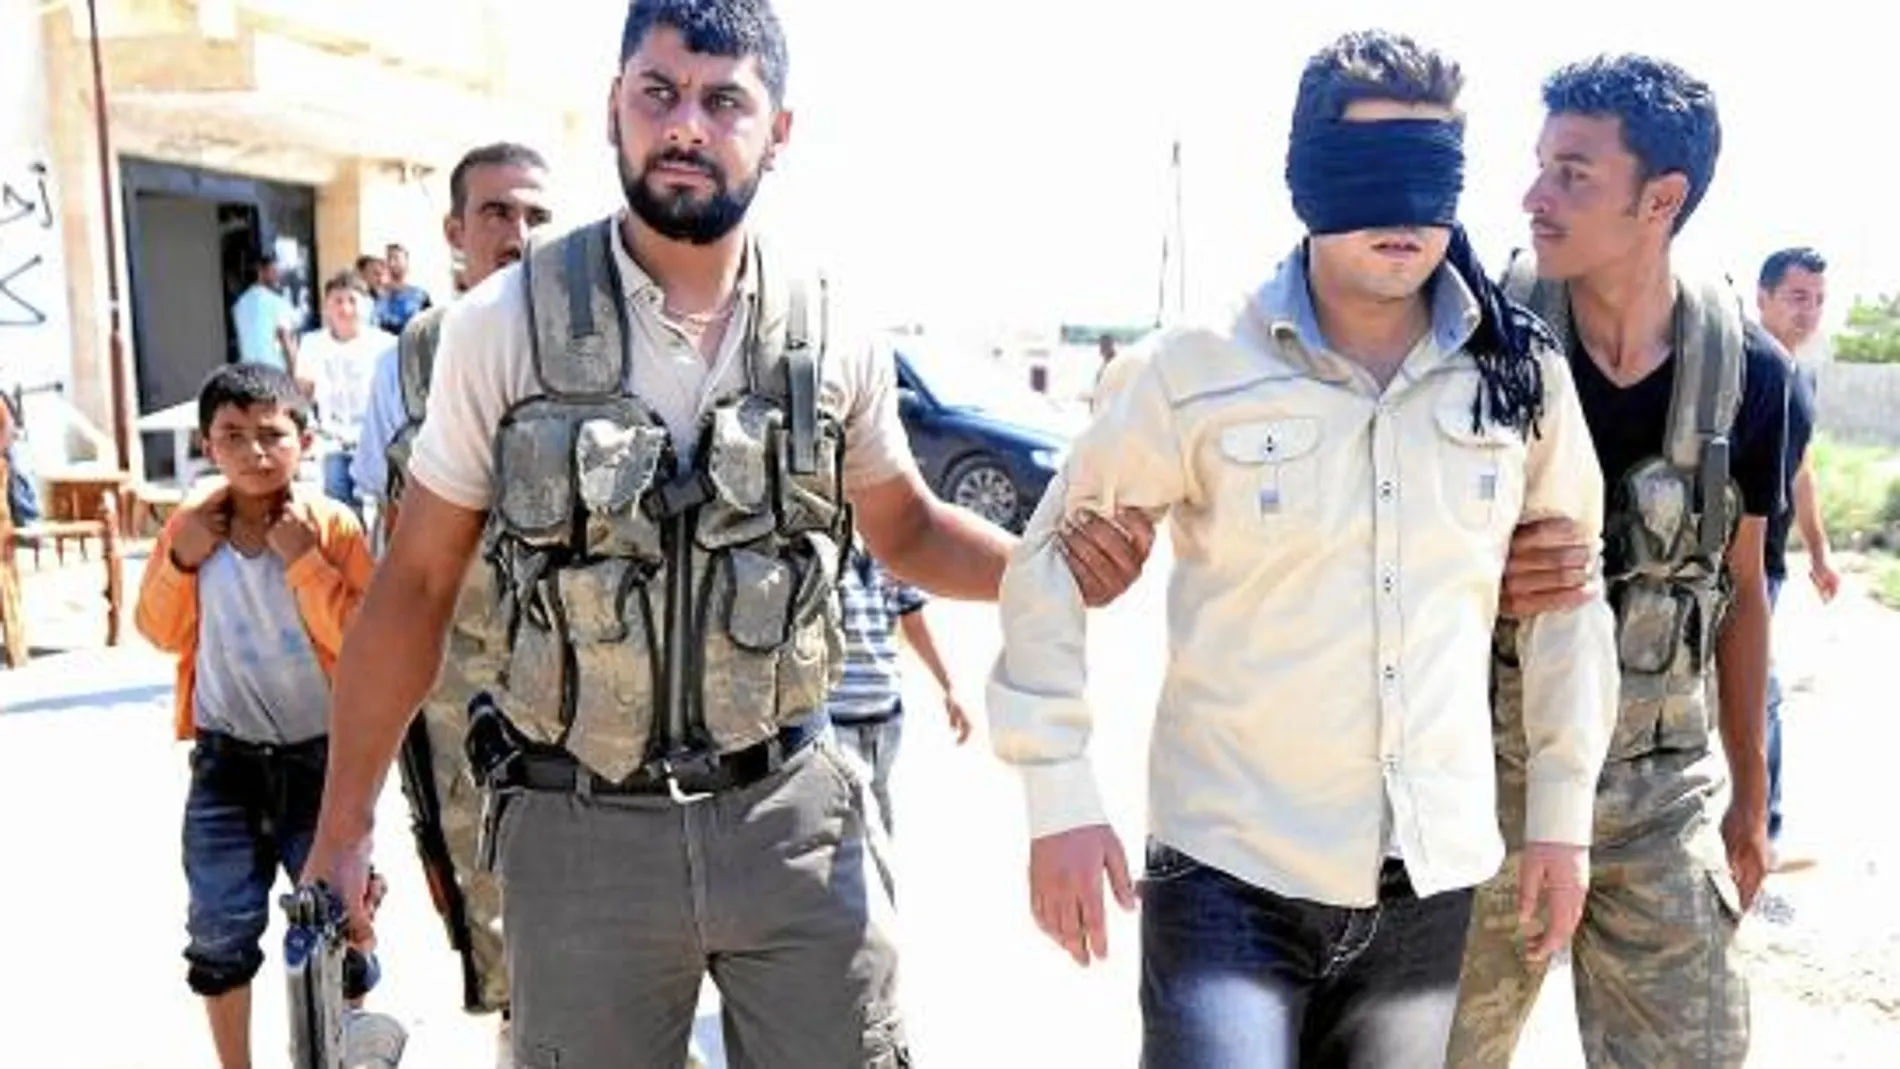 Un grupo de rebeldes sirios detiene a un hombre acusado de traidor cerca de Alepo